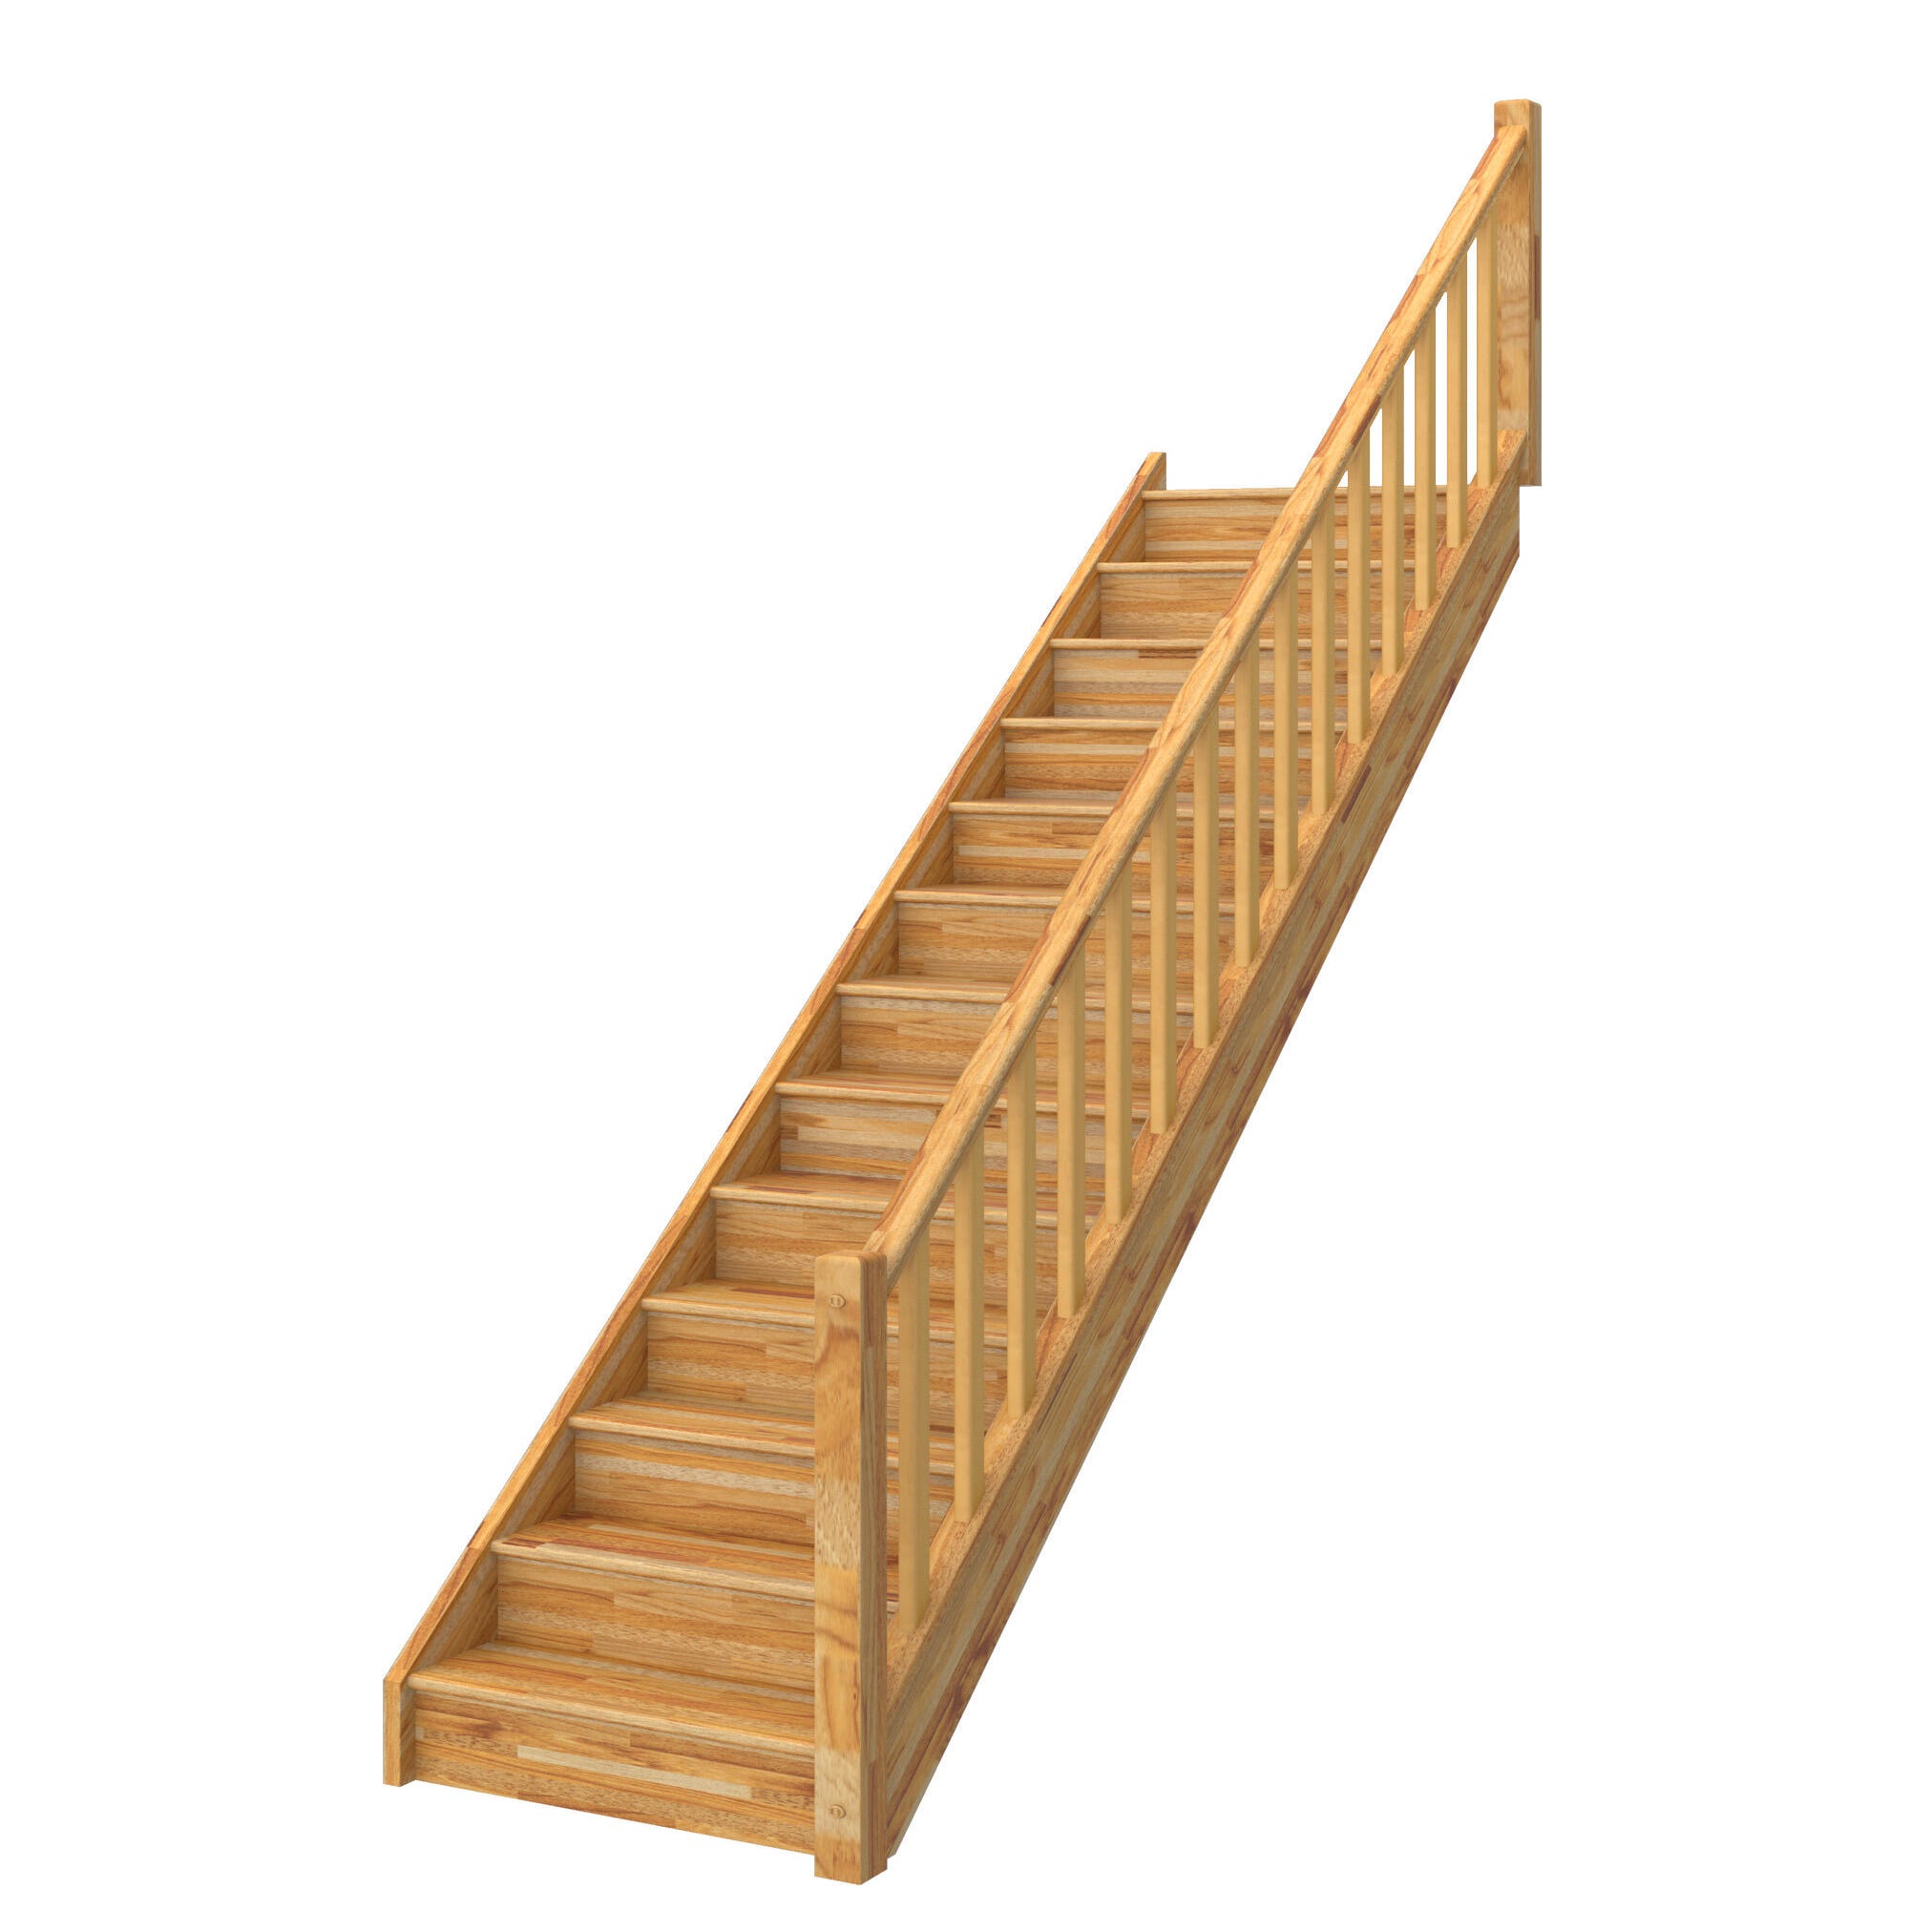 SOCLE EN HÊTRE – Jouer sur la hauteur totale de votre escalier